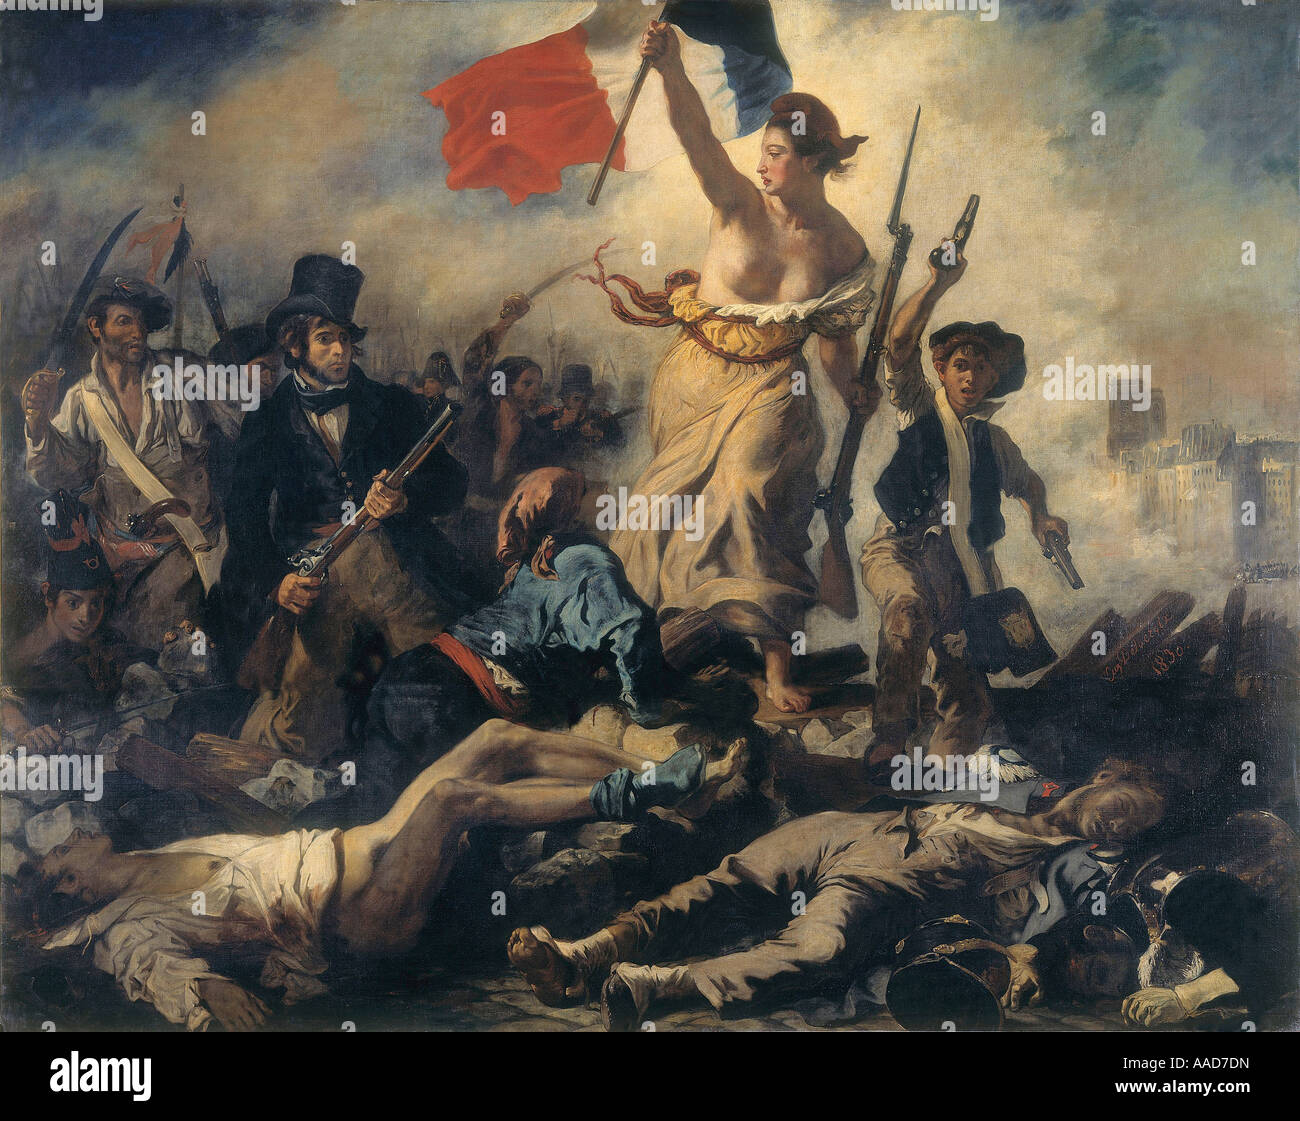 9FK 1830 7 27 A2 C D Delacroix Die Freiheit fuehrt das Volk Eugene Delacroix 1798 1863 Die Freiheit fuehrt das Volk 1830 Allegor Foto Stock